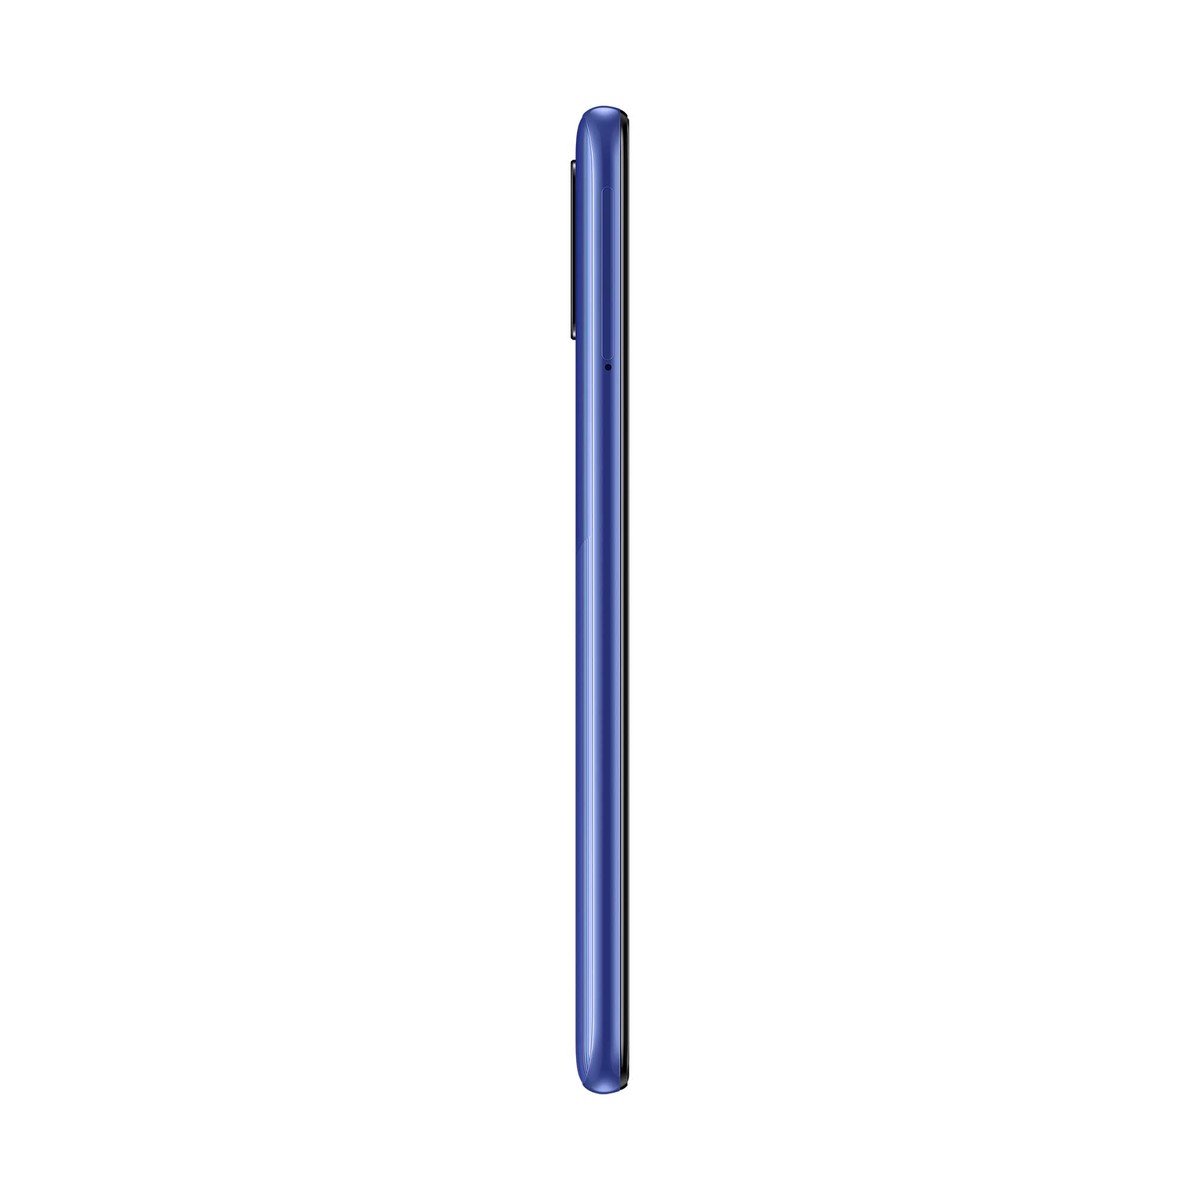 Samsung Galaxy A31 SMA315 128GB Blue